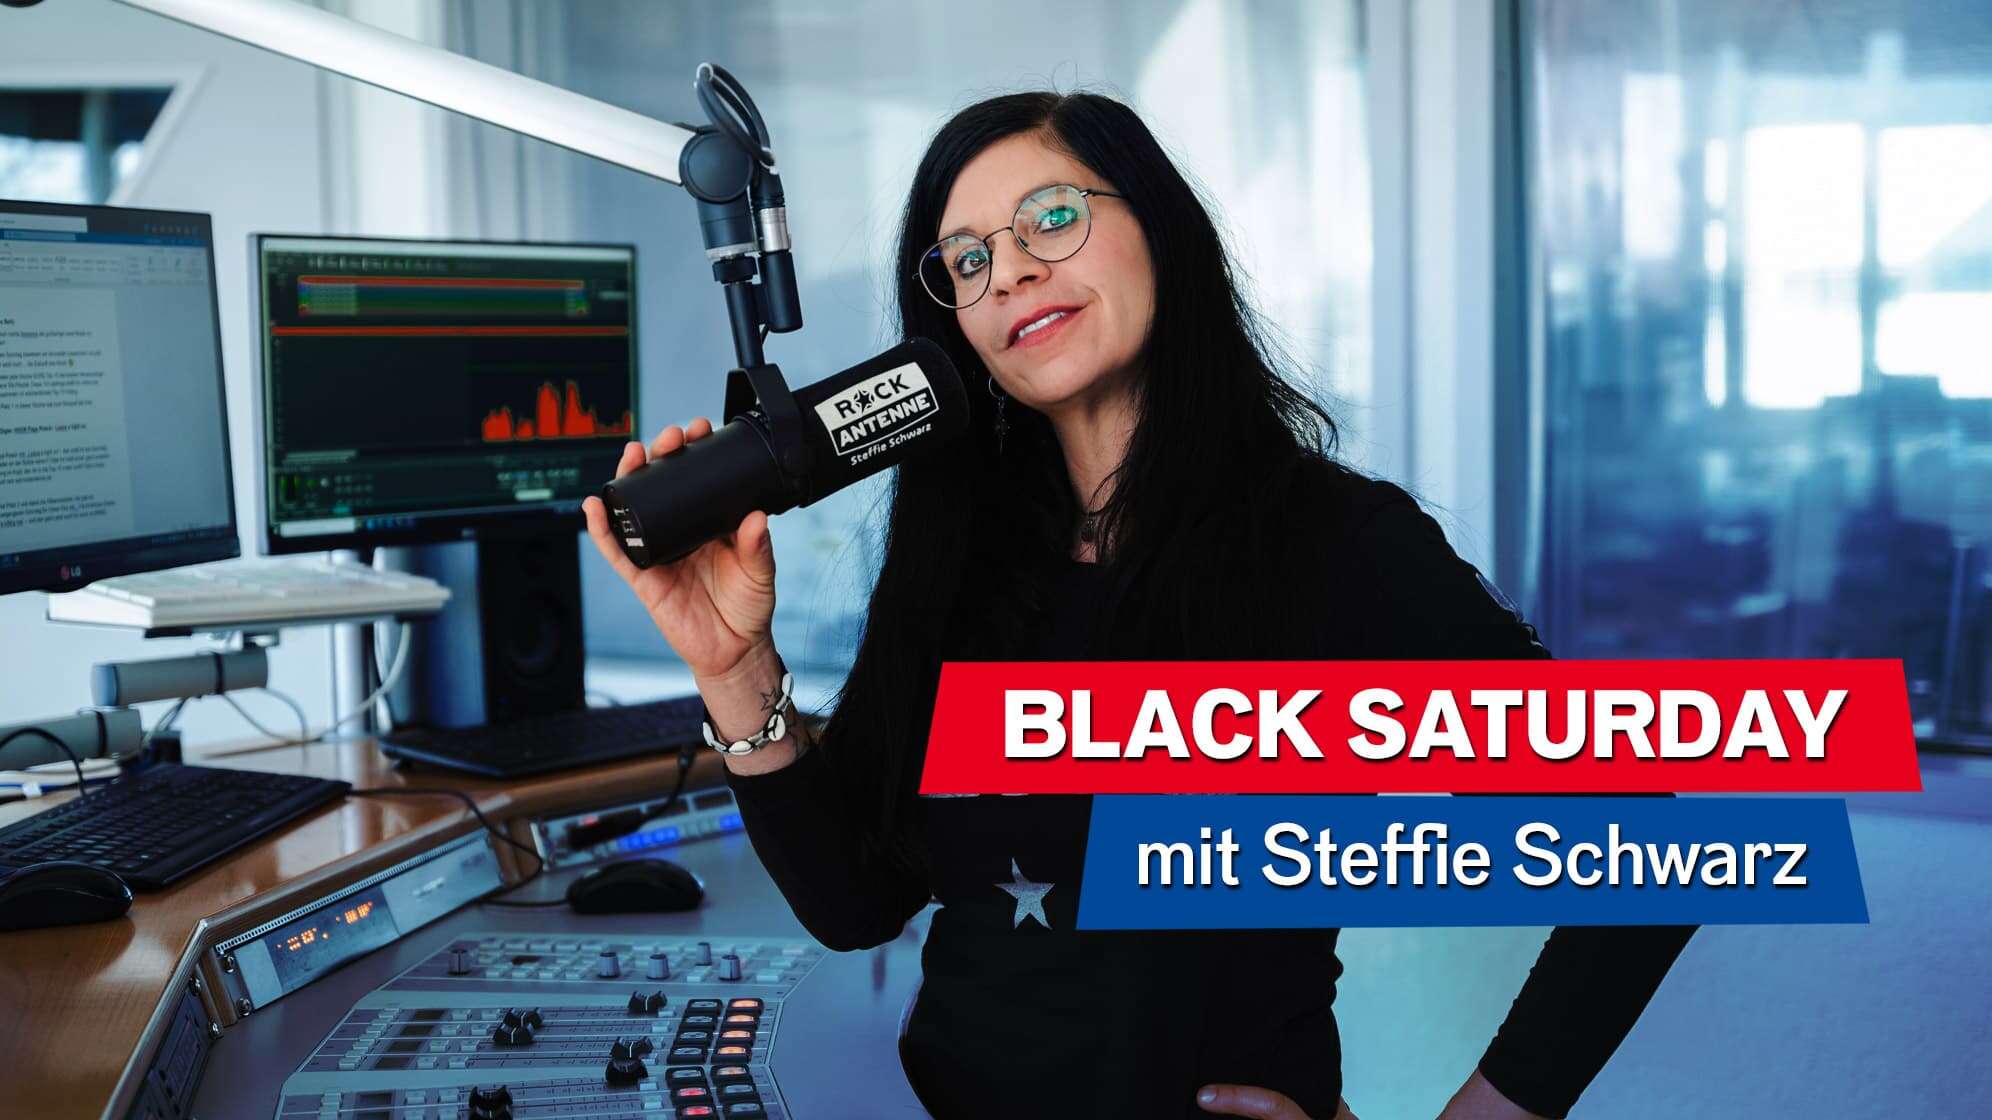 ROCK ANTENNE Moderatorin Steffie Schwarz im ROCK ANTENNE Studio, Text: Black Saturday mit Steffie Schwarz